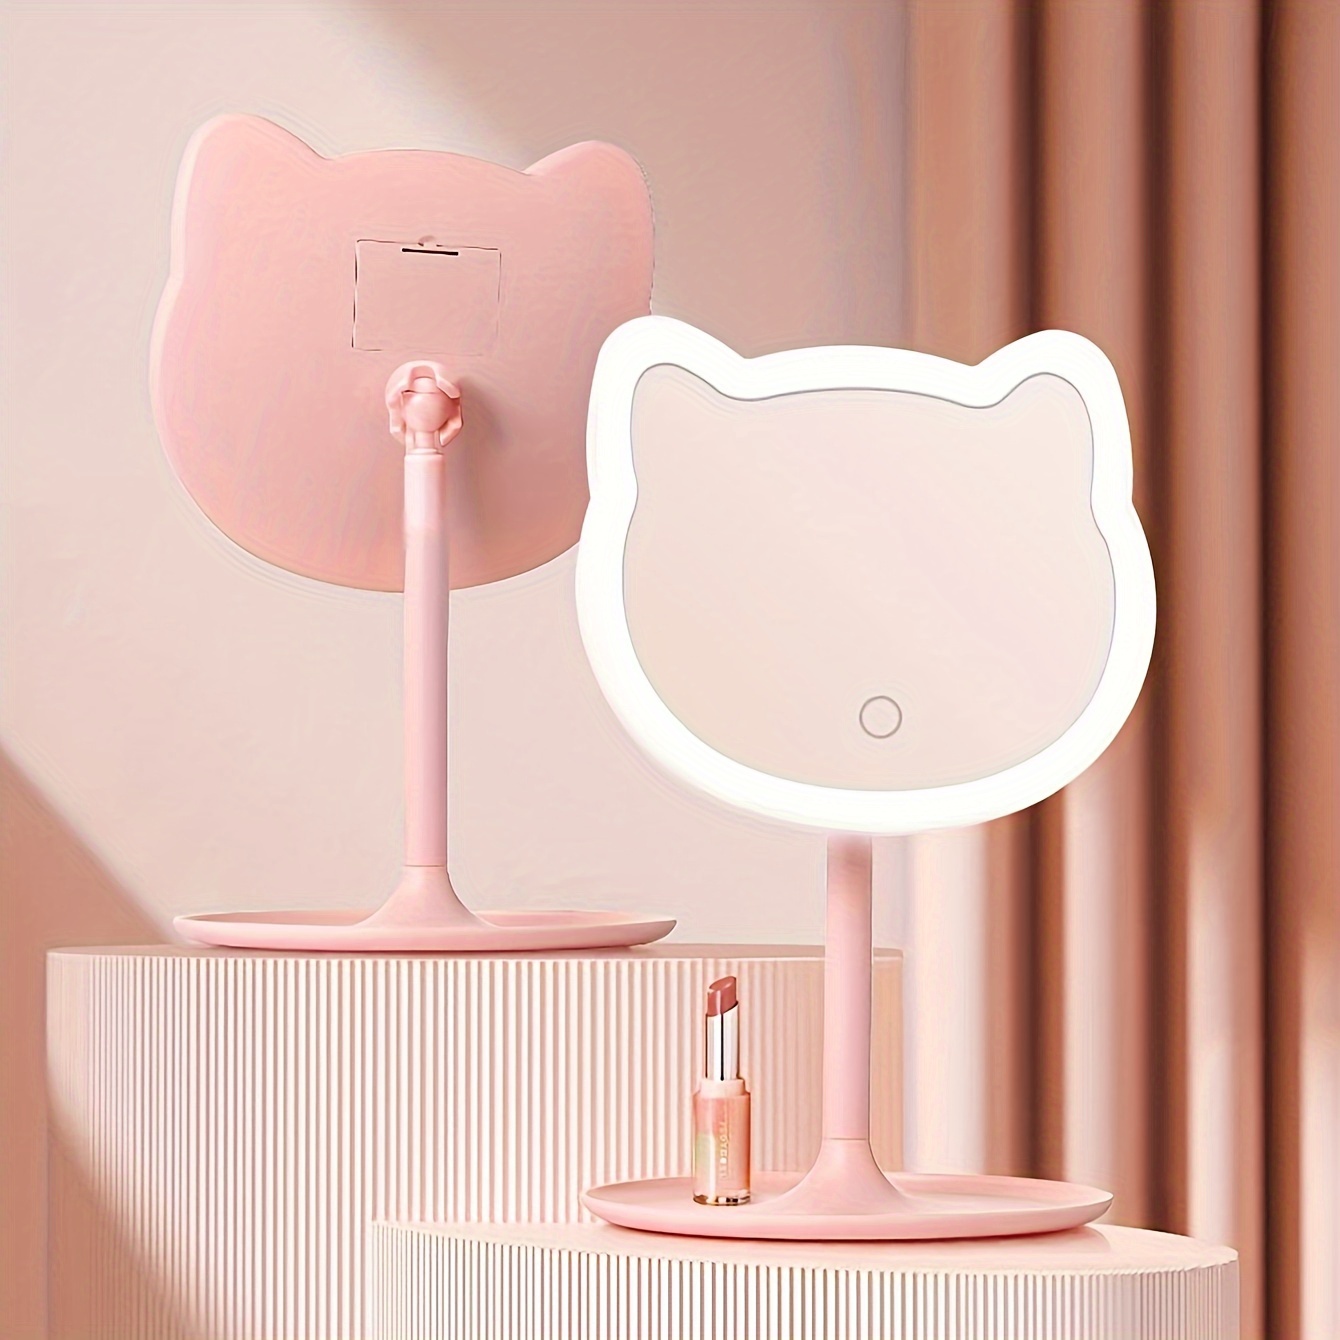 Mode Katzen ohr Kosmetik spiegel Badezimmer Make-up Spiegel Wand